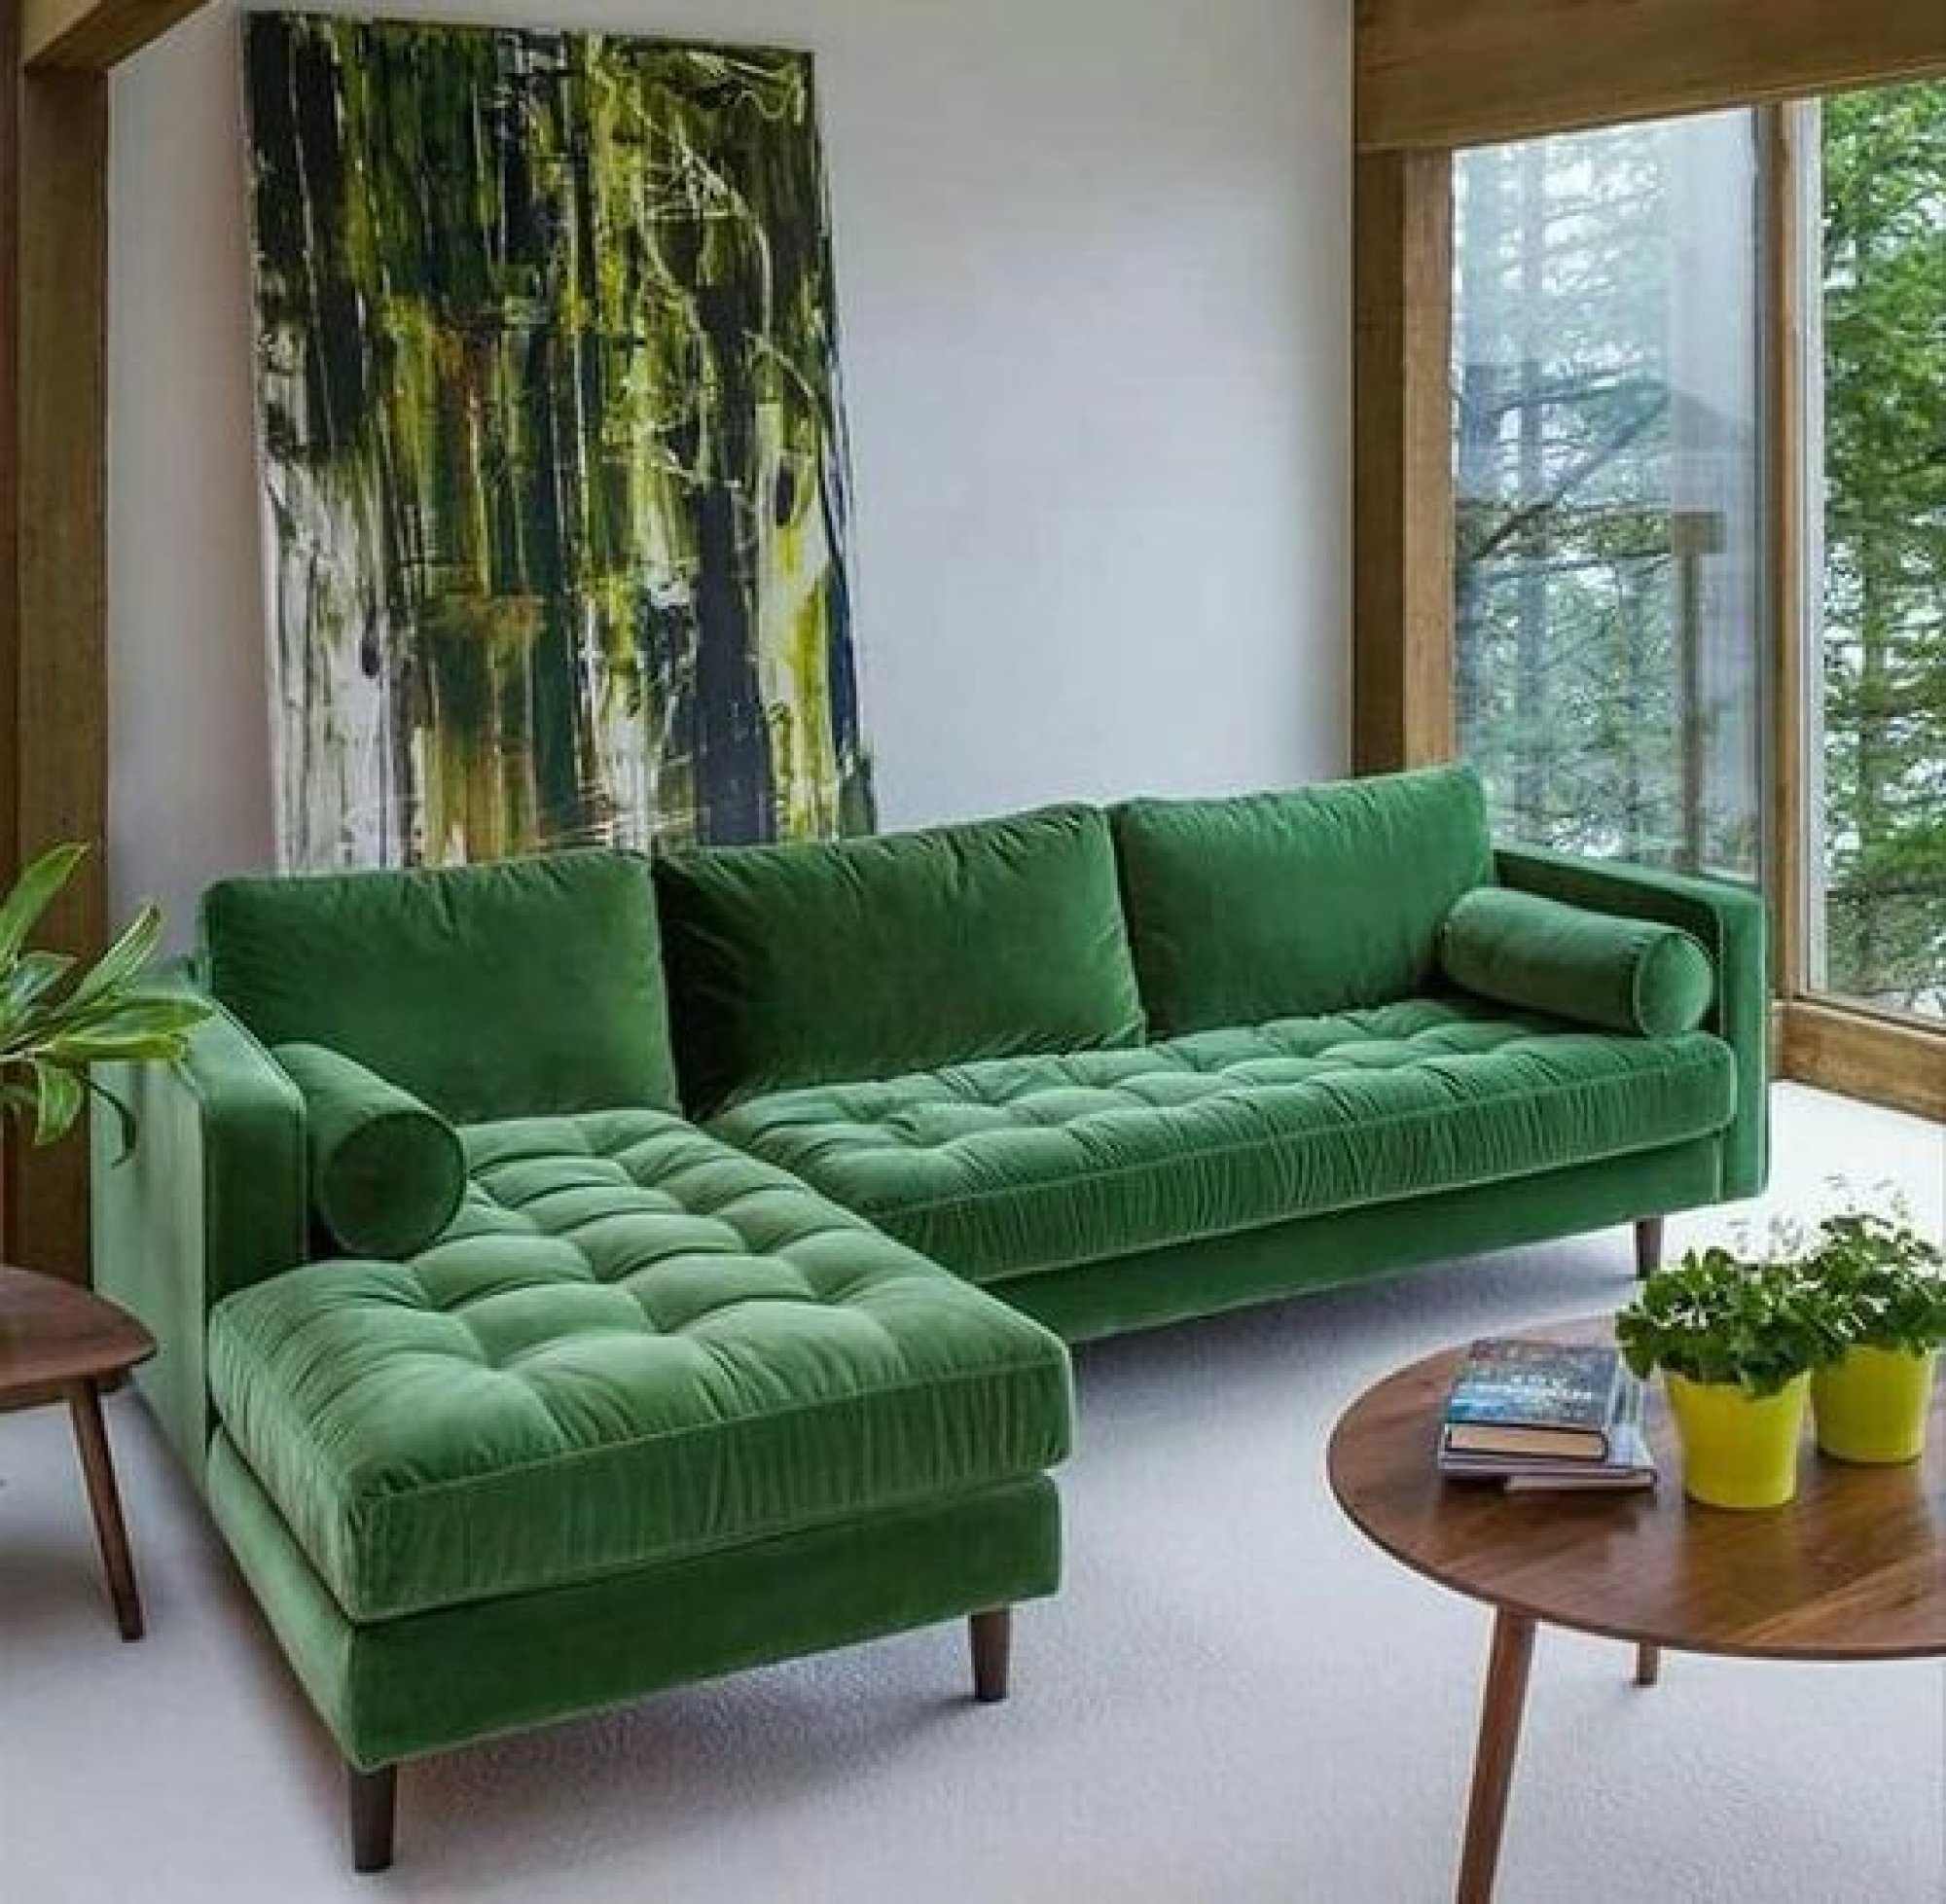  диван в интерьере гостиной: фото интересного дизайна комнаты